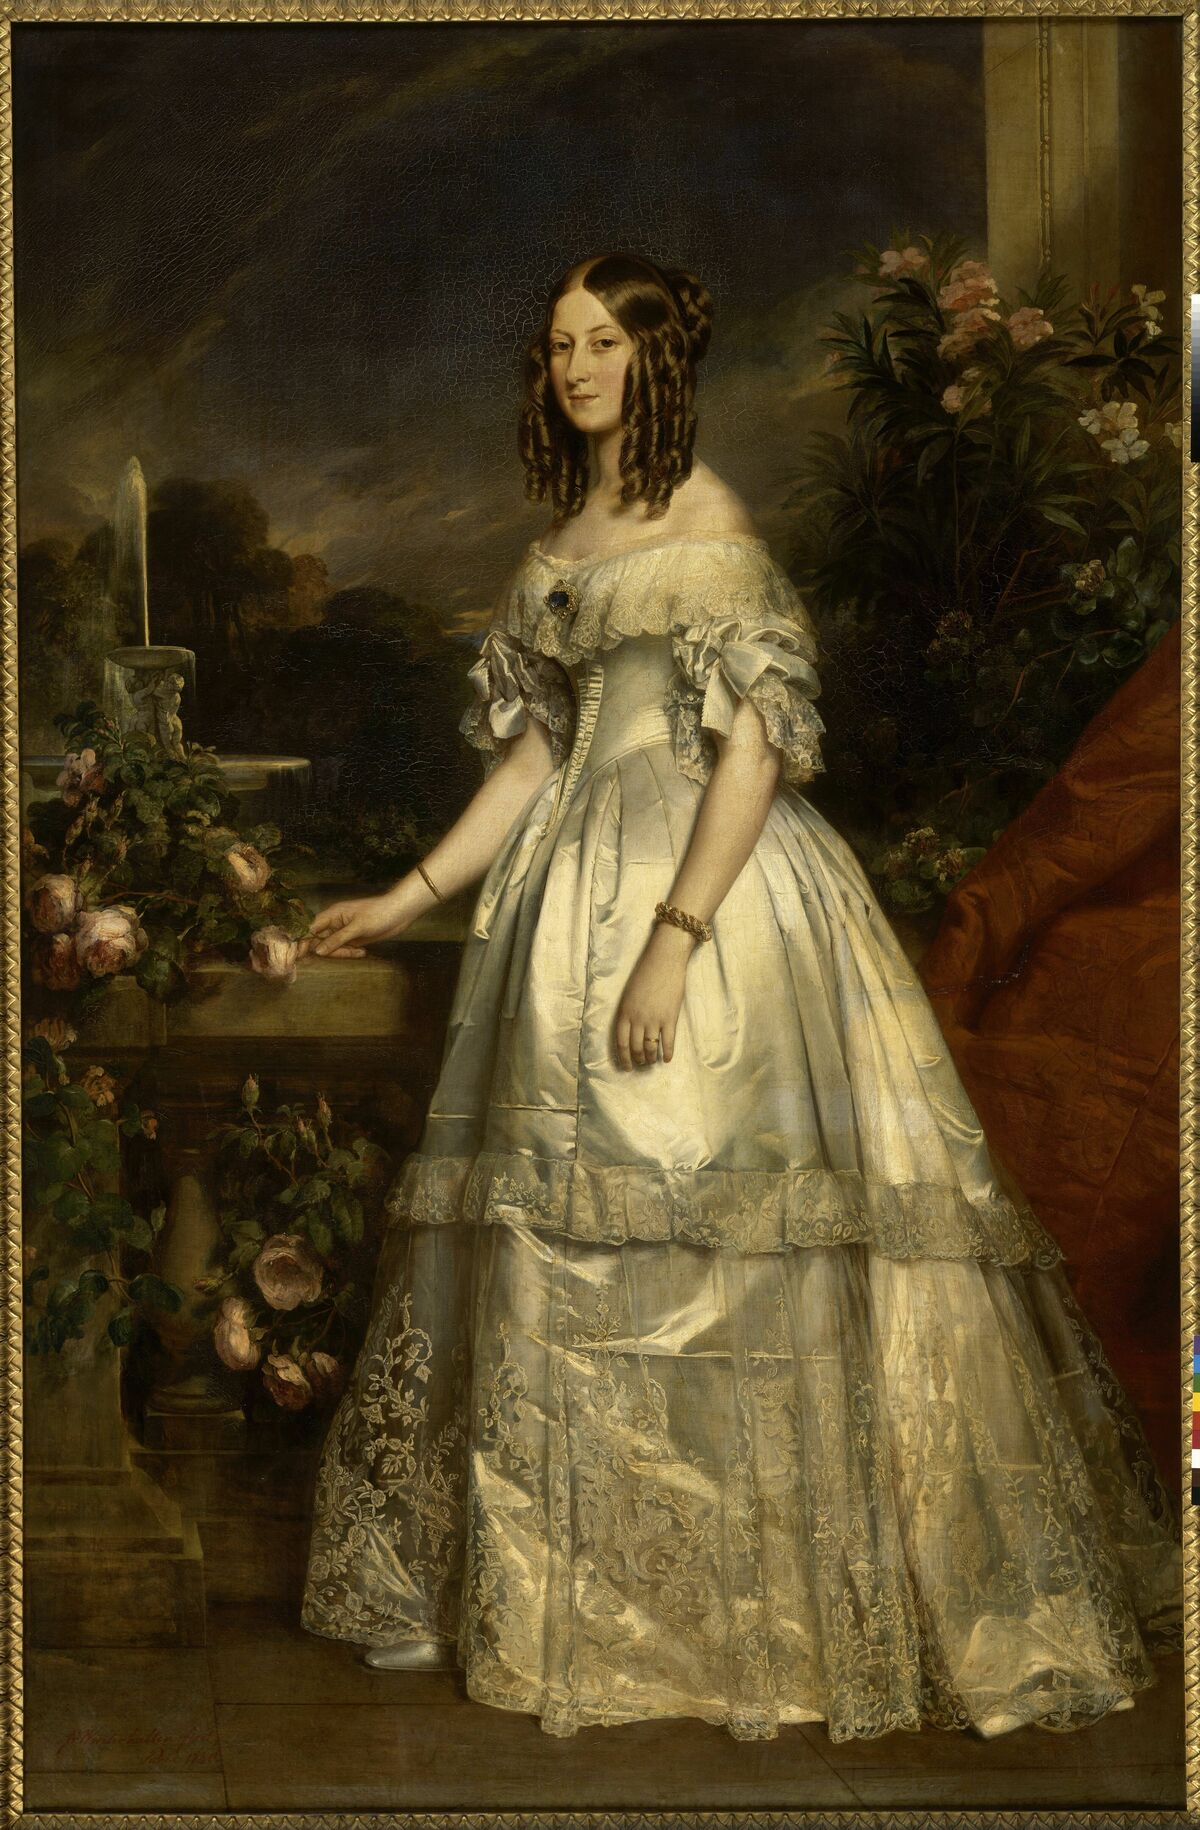 GFD 1/35: Viktoria d’Orléans, Herzogin von Nemours (Portrait von Franz Xaver Winterhalter, 1840)